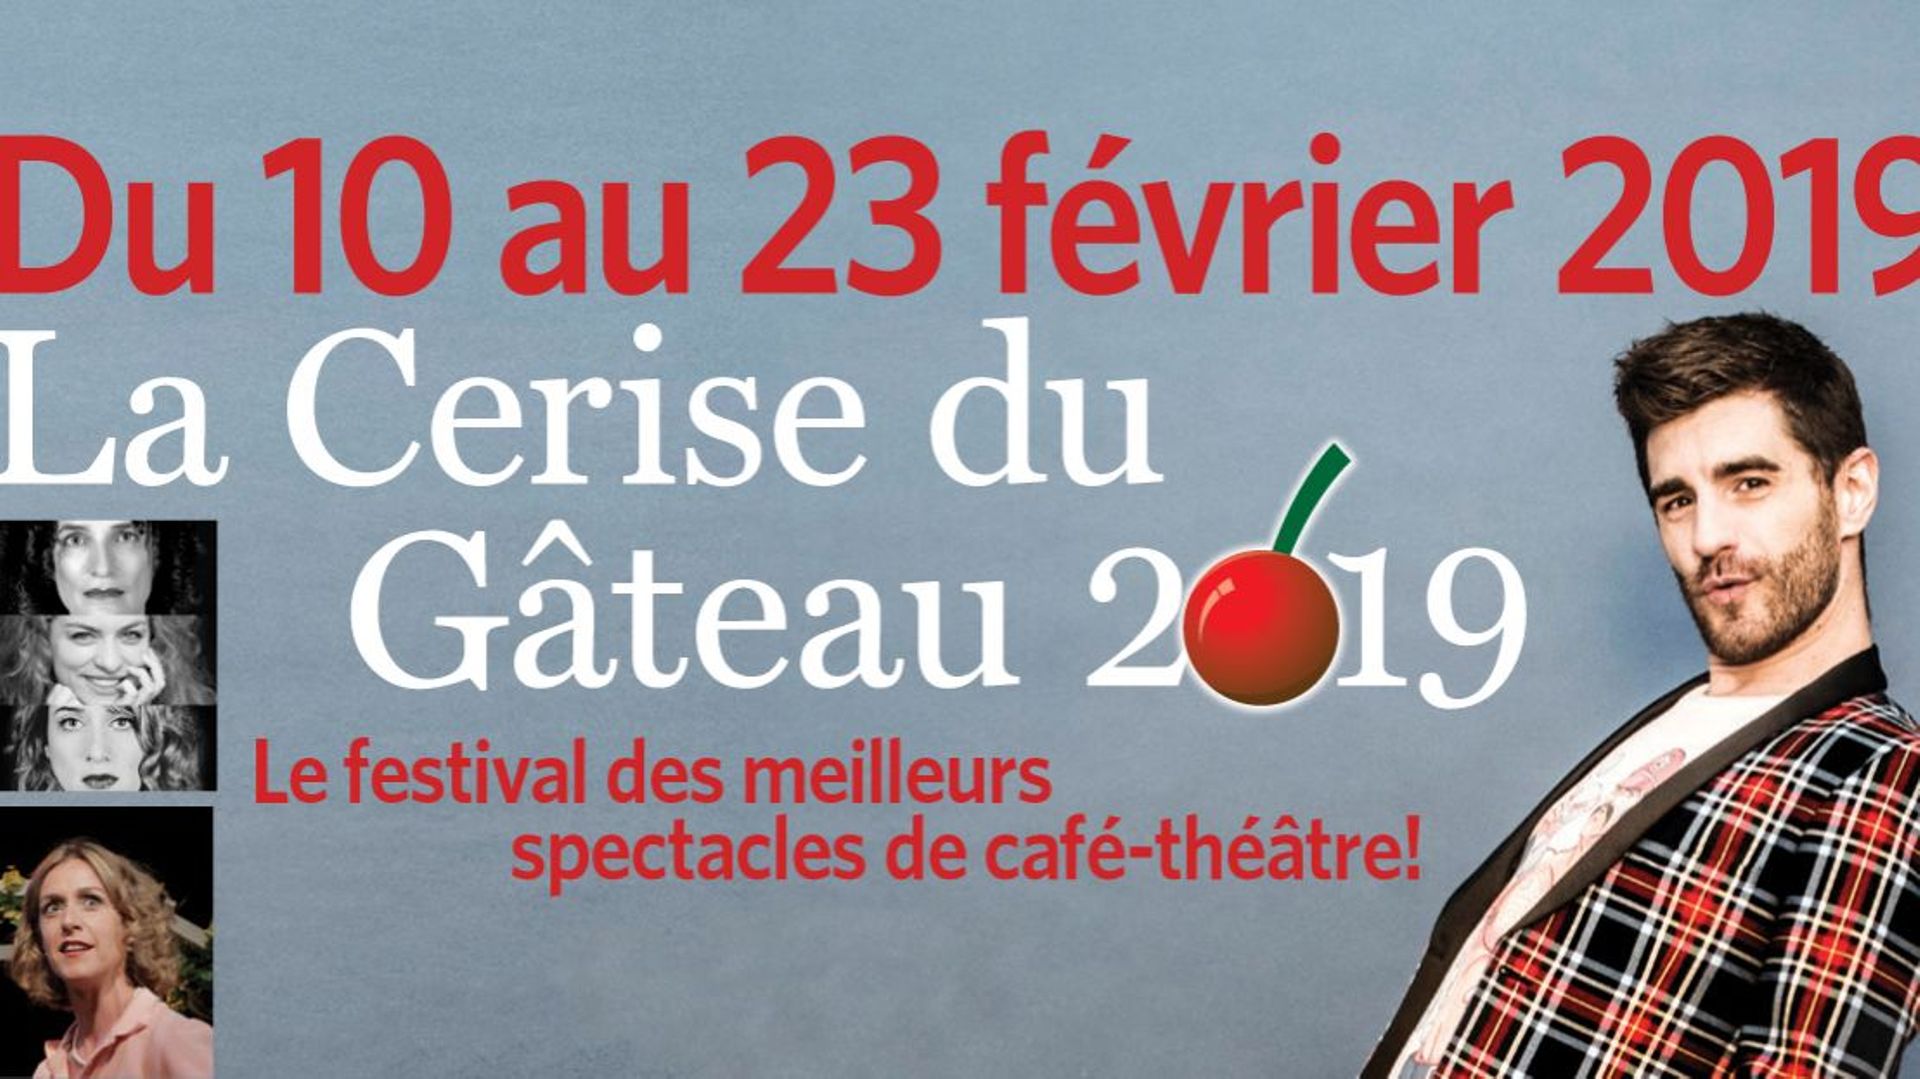 la-cerise-du-gateau-festival-de-cafe-theatre-21eme-edition-du-10-au-23-fevrier-2019